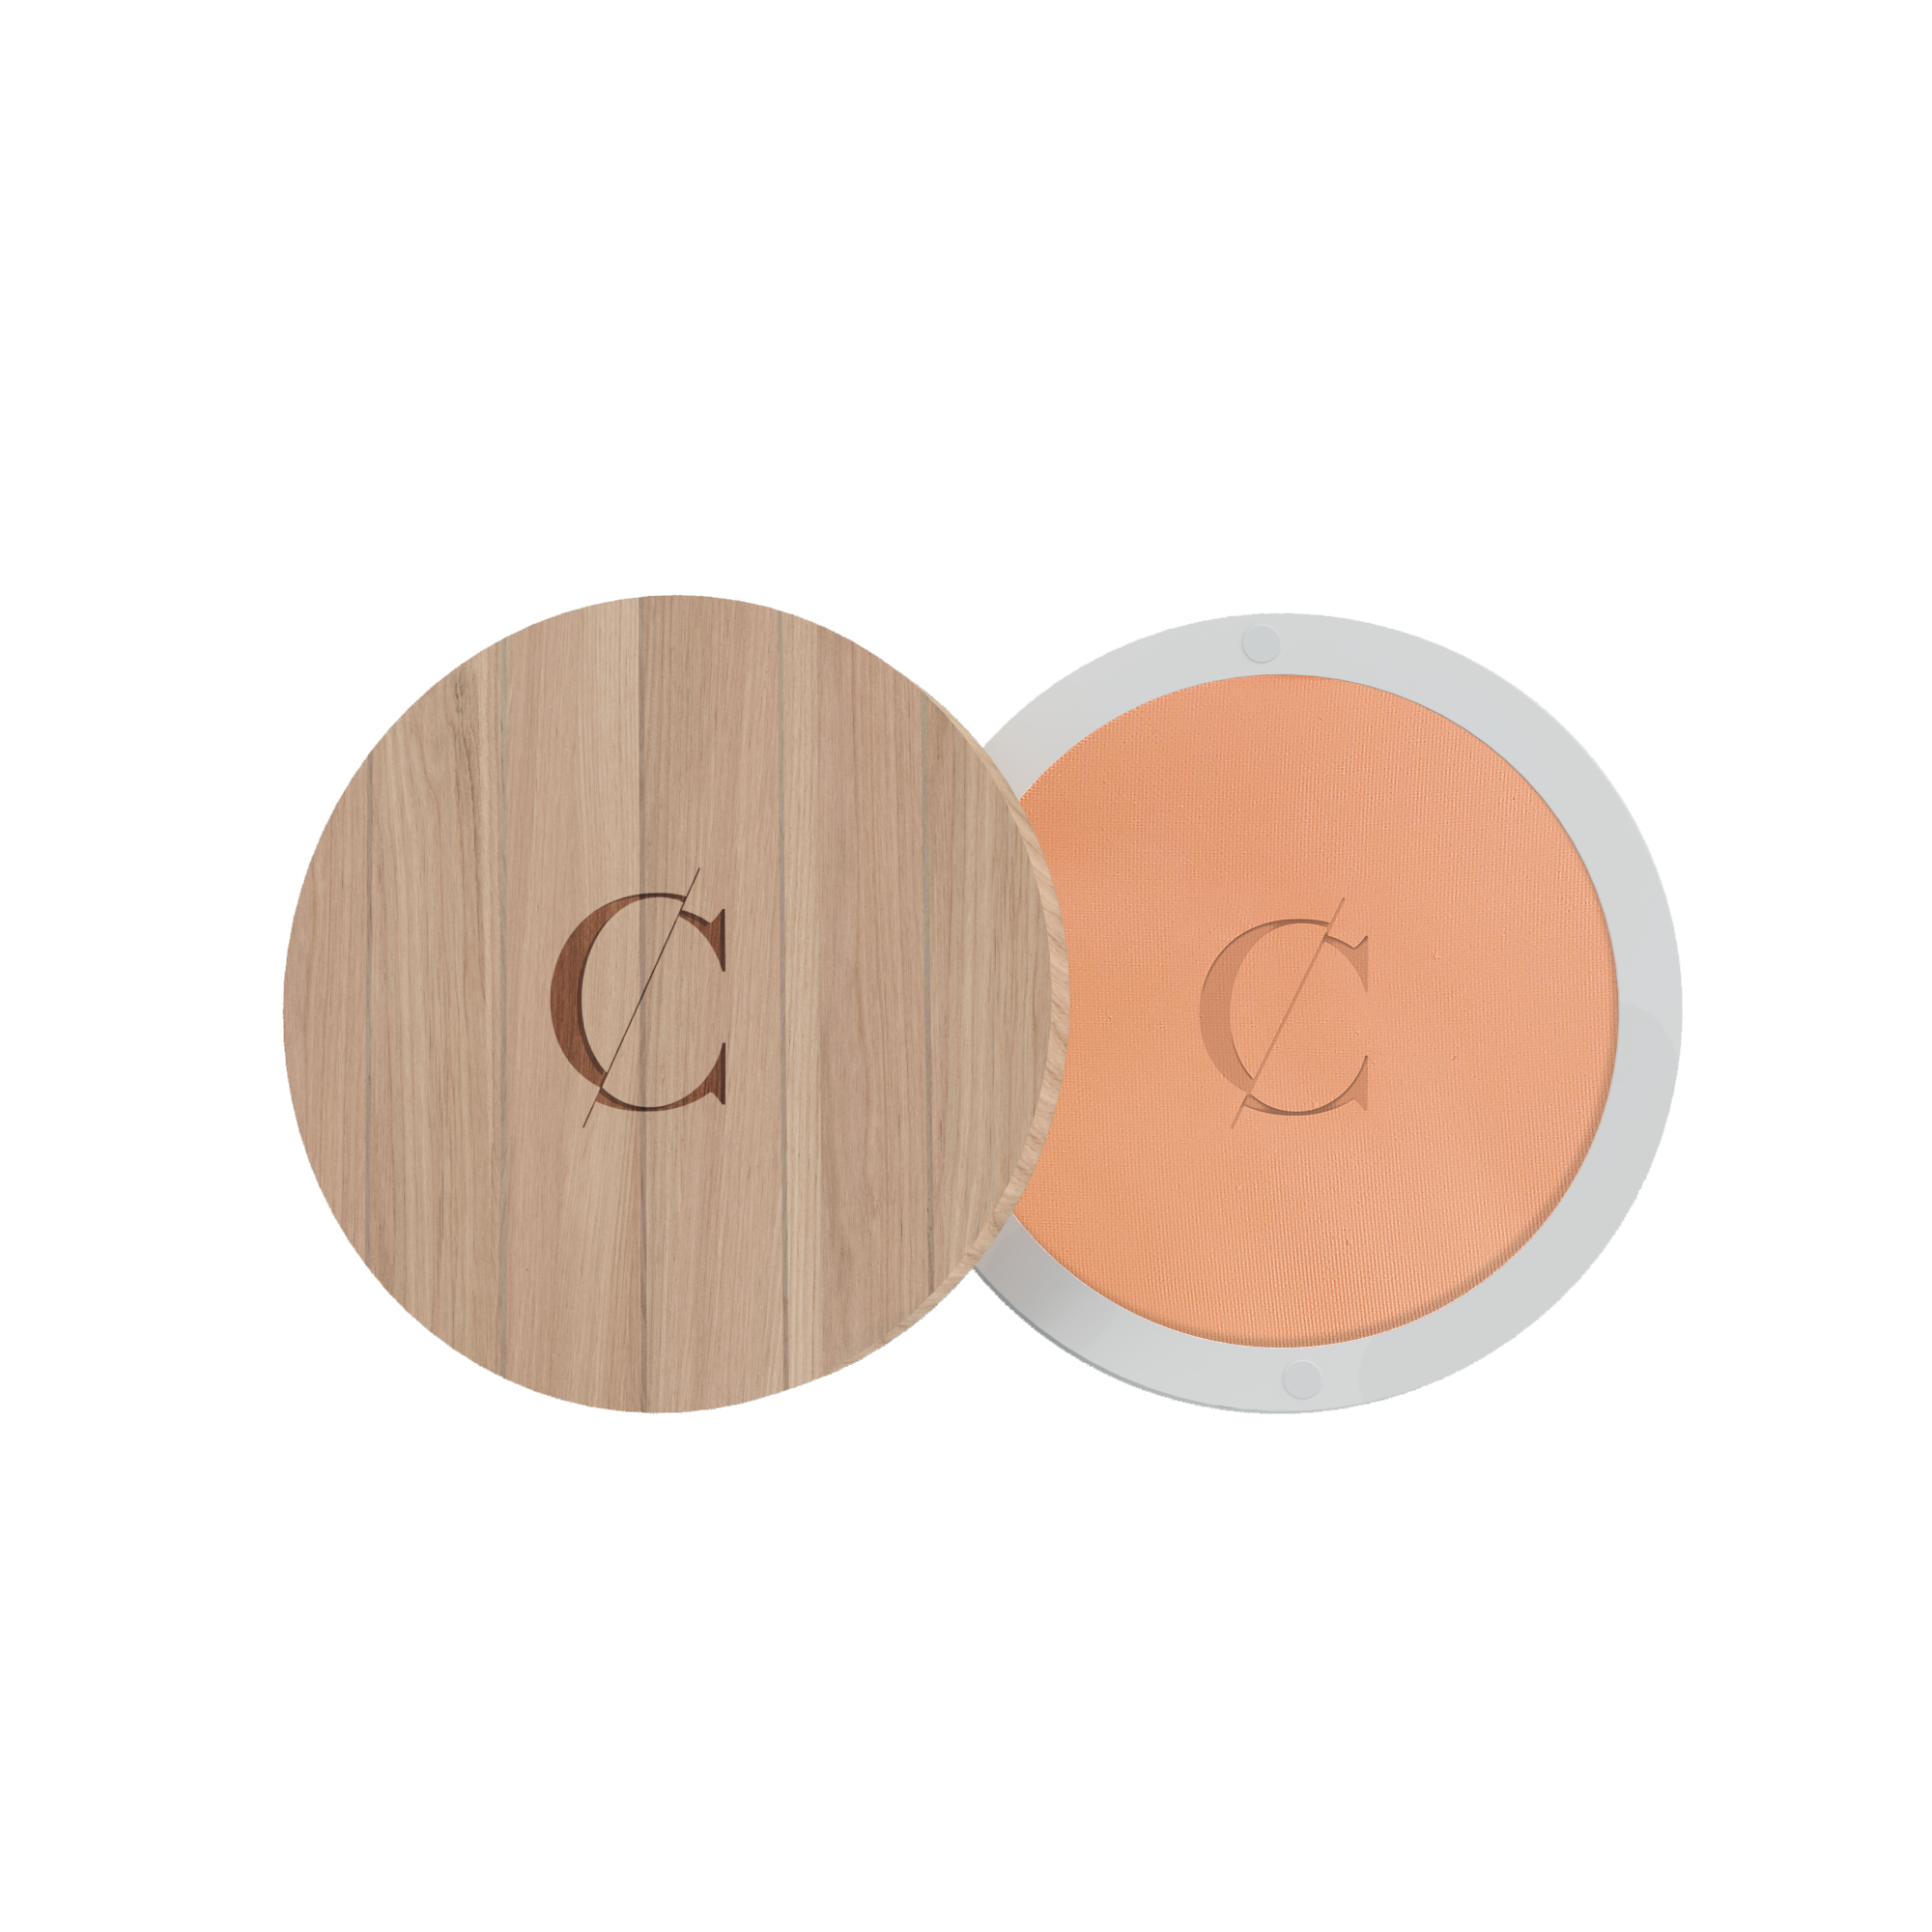 Deze natuurlijke gezichtspoeder van Couleur Caramel fixeert de teint van de huid, en deze biologische compactpowder maakt de huid mat en egaal. 